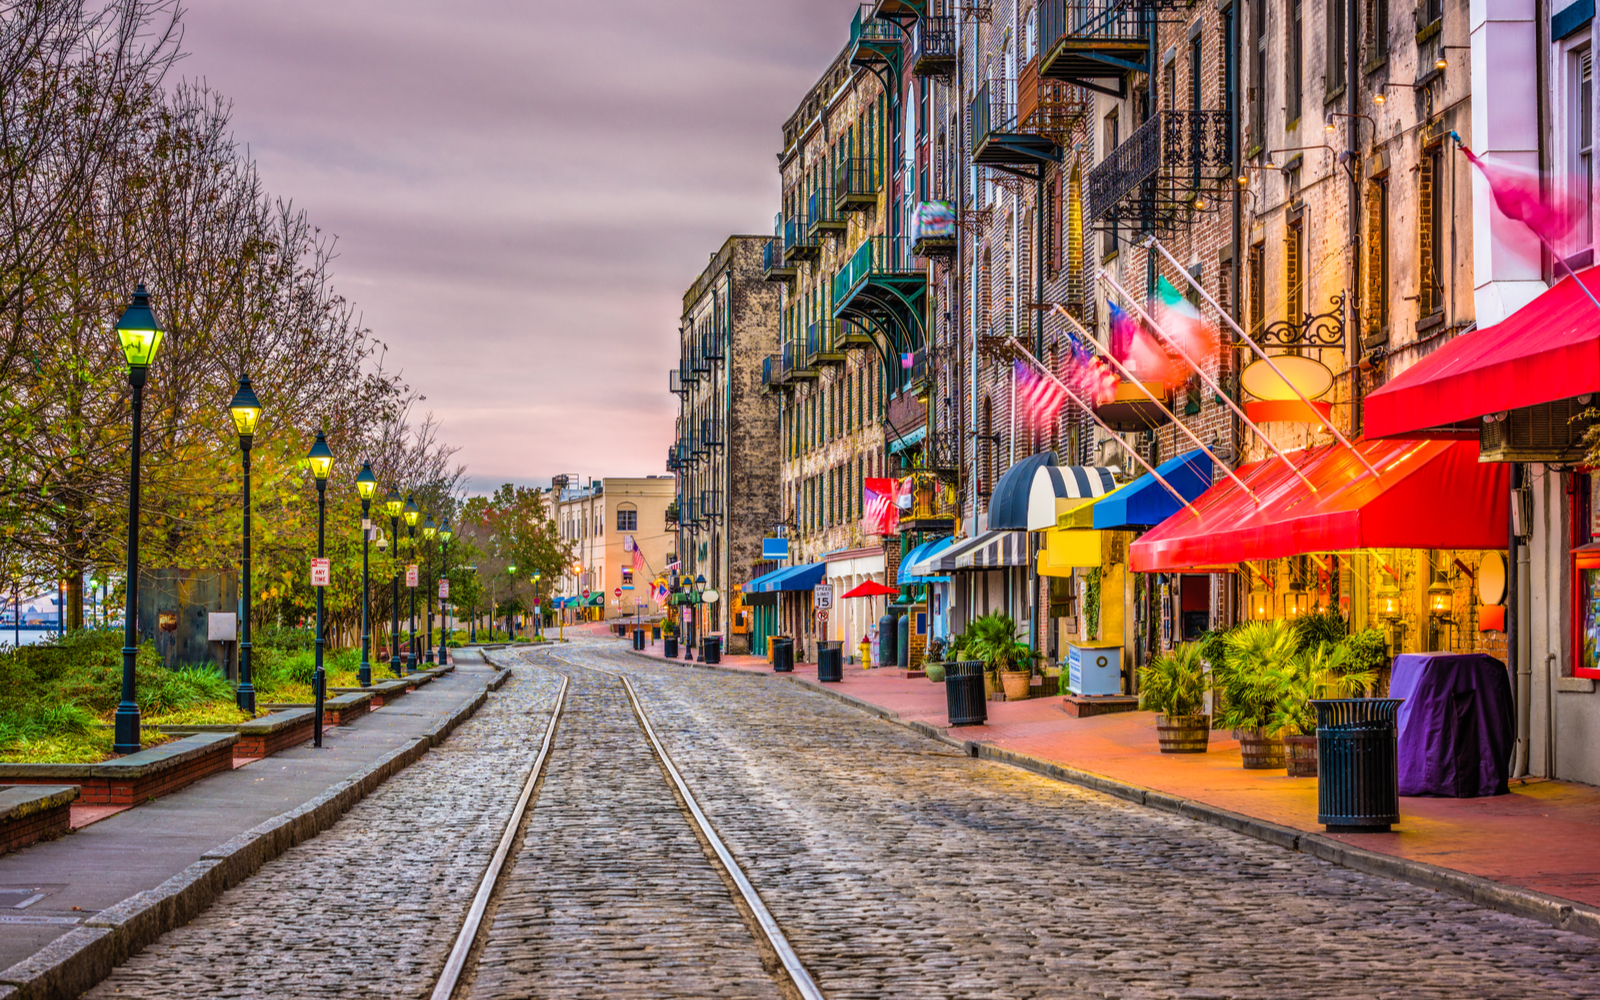 16 Best Things to Do in Savannah, Georgia in 2023